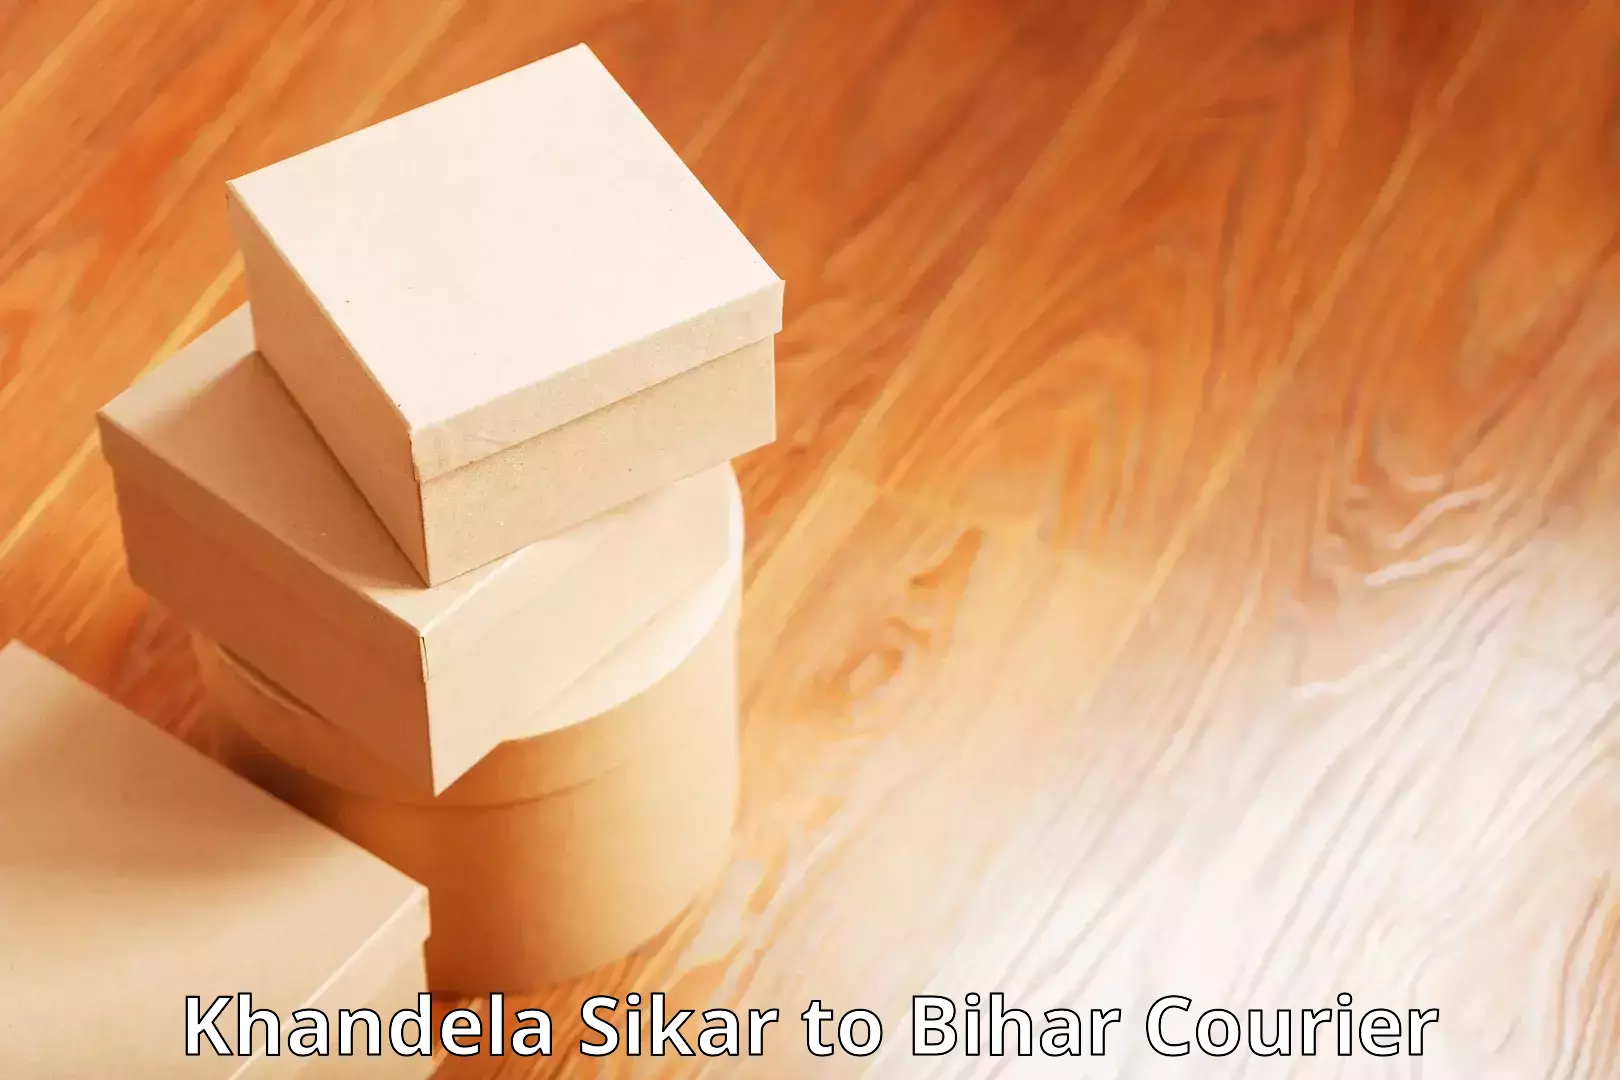 Diverse delivery methods in Khandela Sikar to Dehri